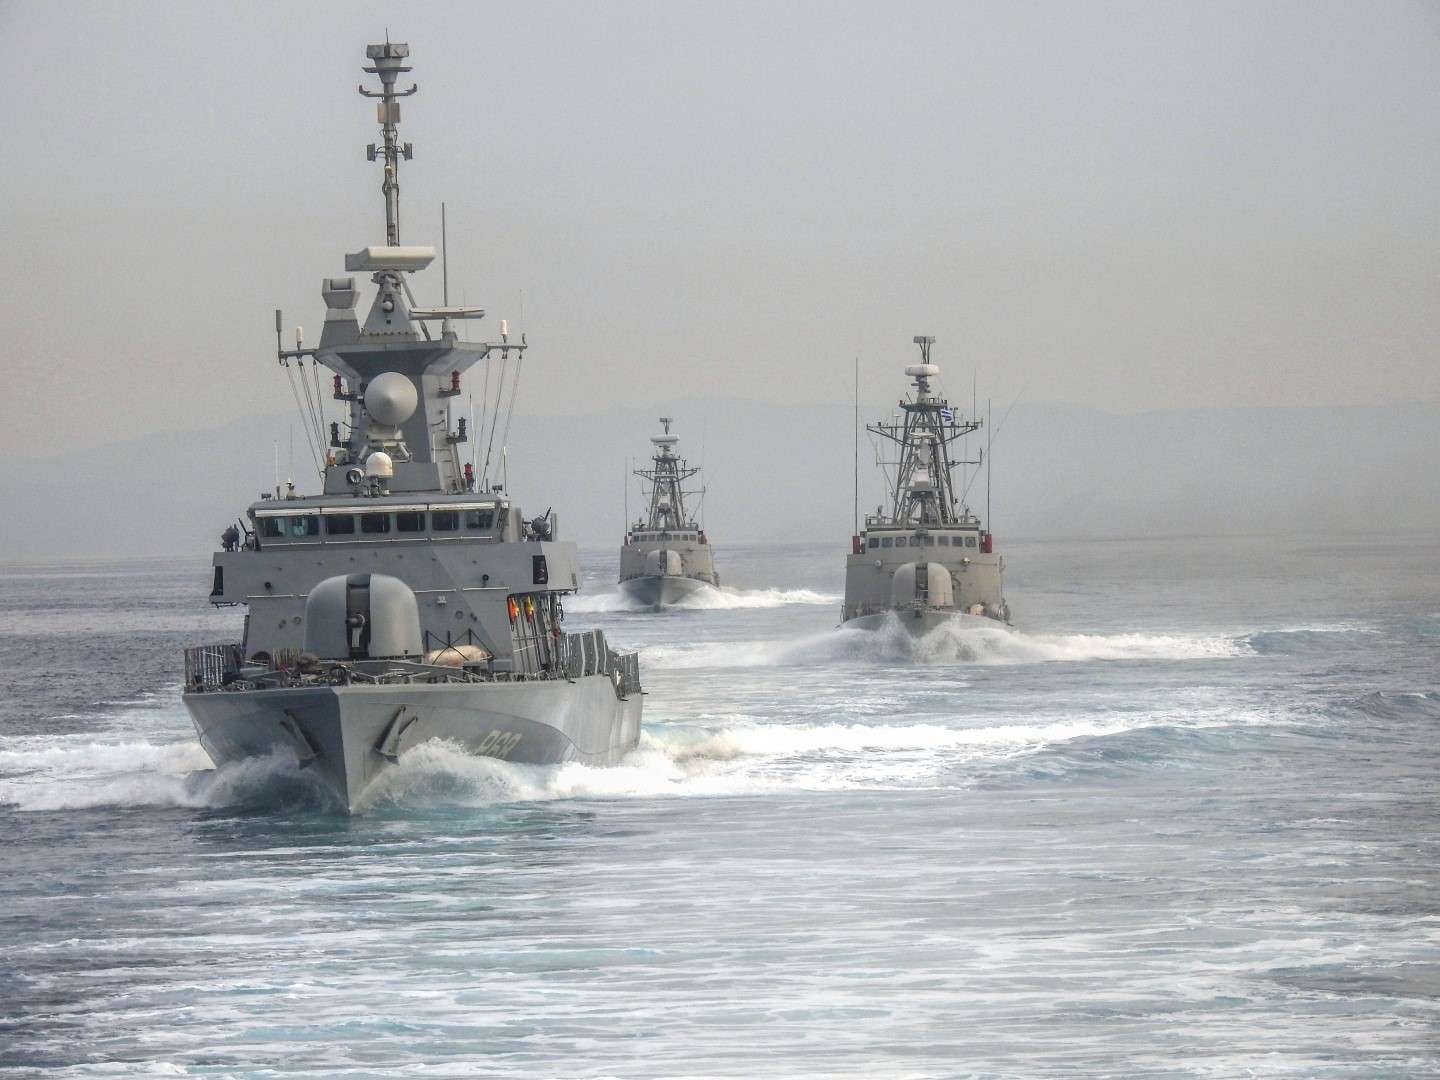 Ποιοι, γιατί και πως θέλουν κάποιοι να στείλουν ελληνικό πολεμικό πλοίο στην Ερυθρά Θάλασσα; Αποστολή υψηλού ρίσκου